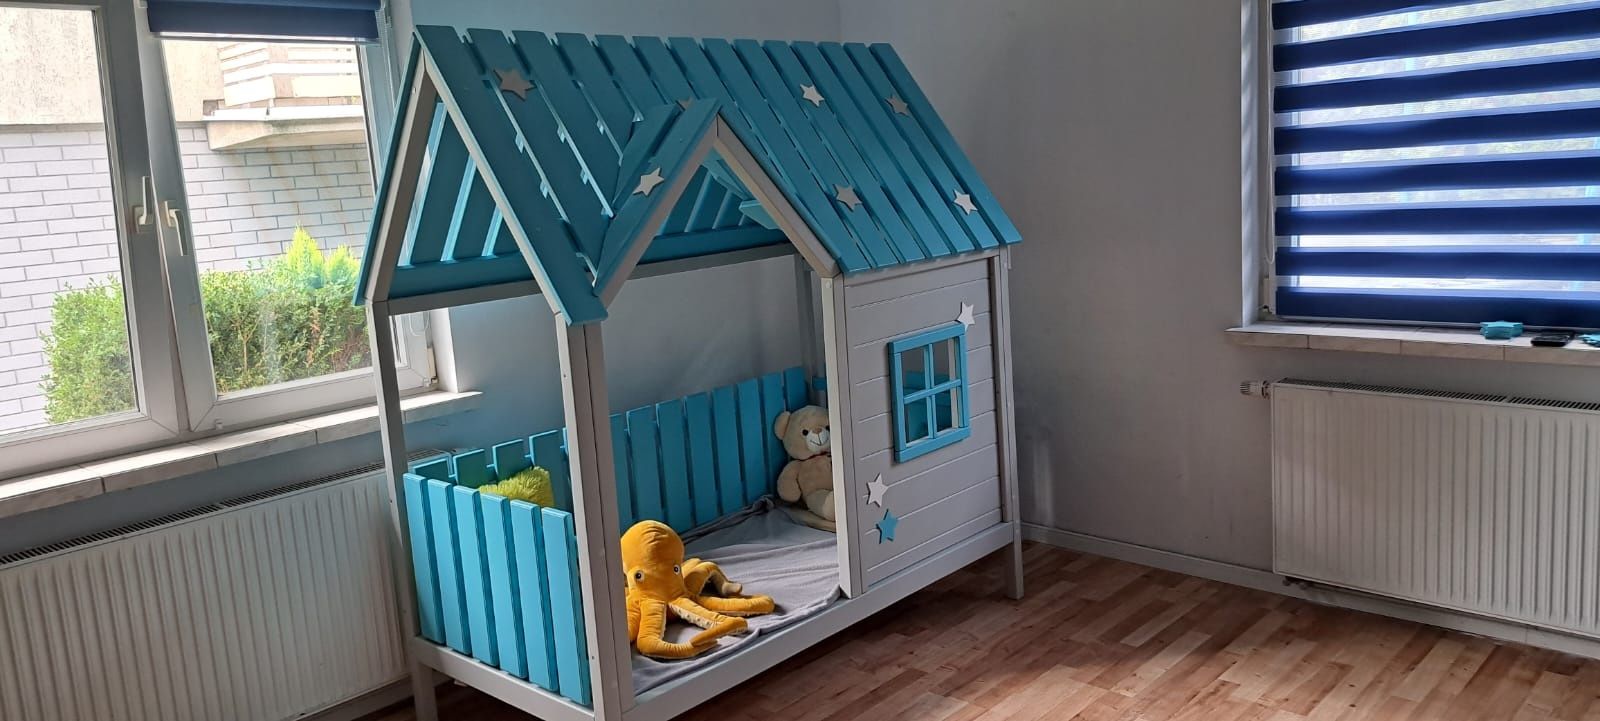 Łóżeczko łóżko  drewniane domek dla dzieci 160x80 led RATY